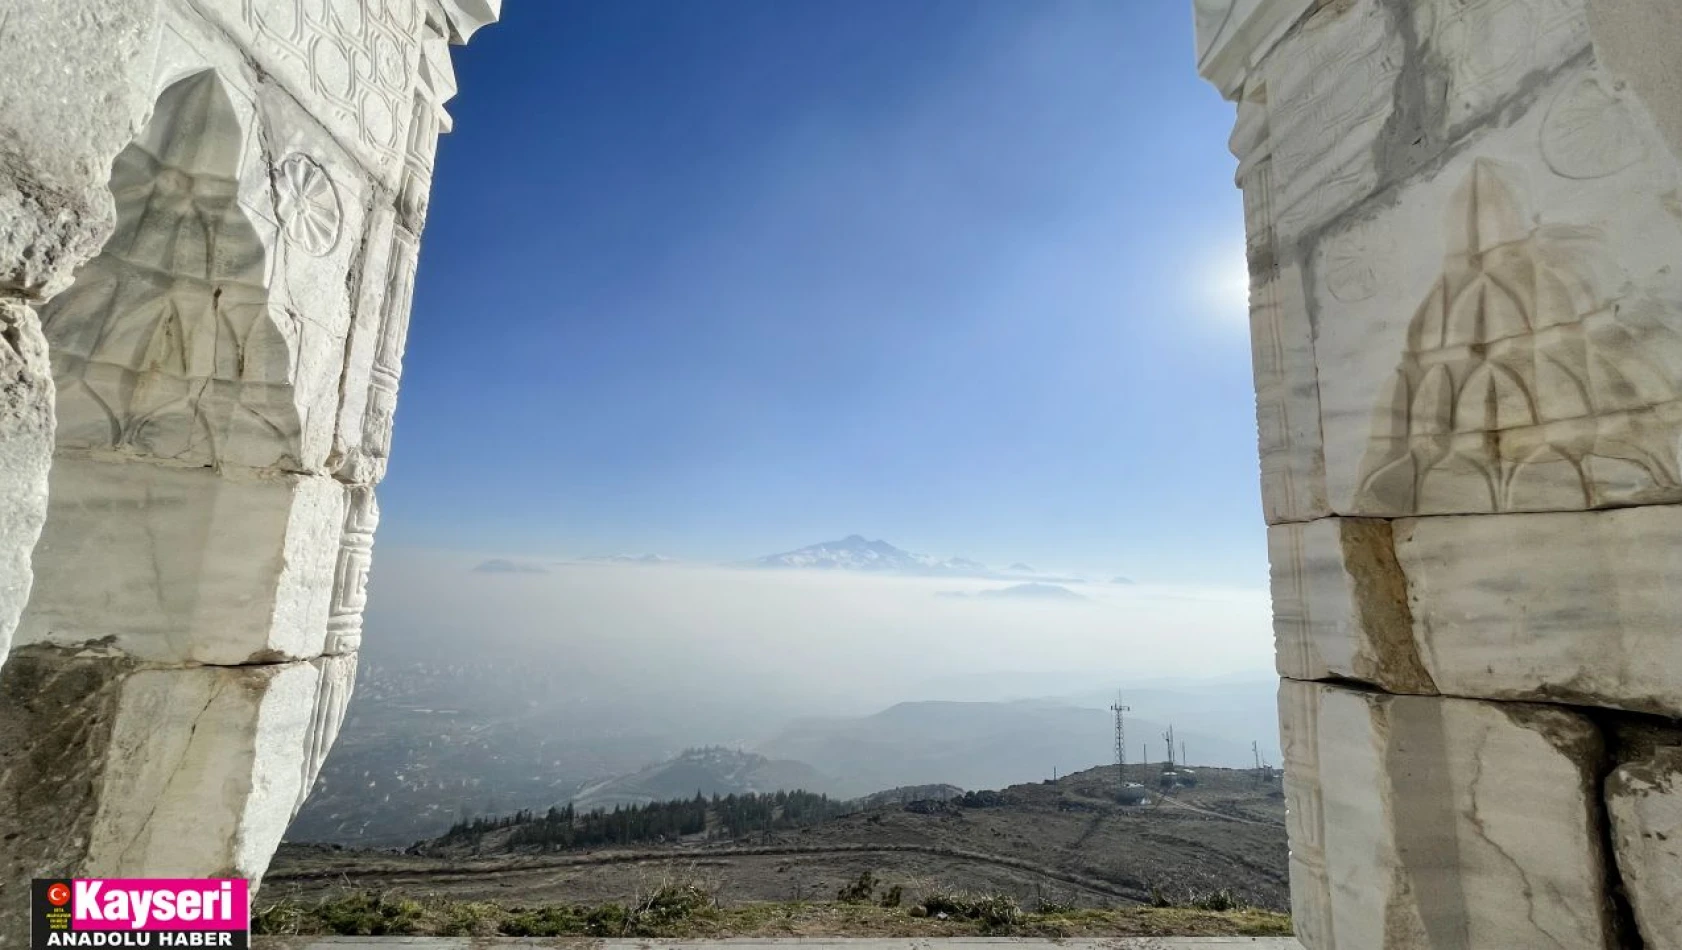 Hıdırellez Tepesi 'astronomi kampüsü' oluyor